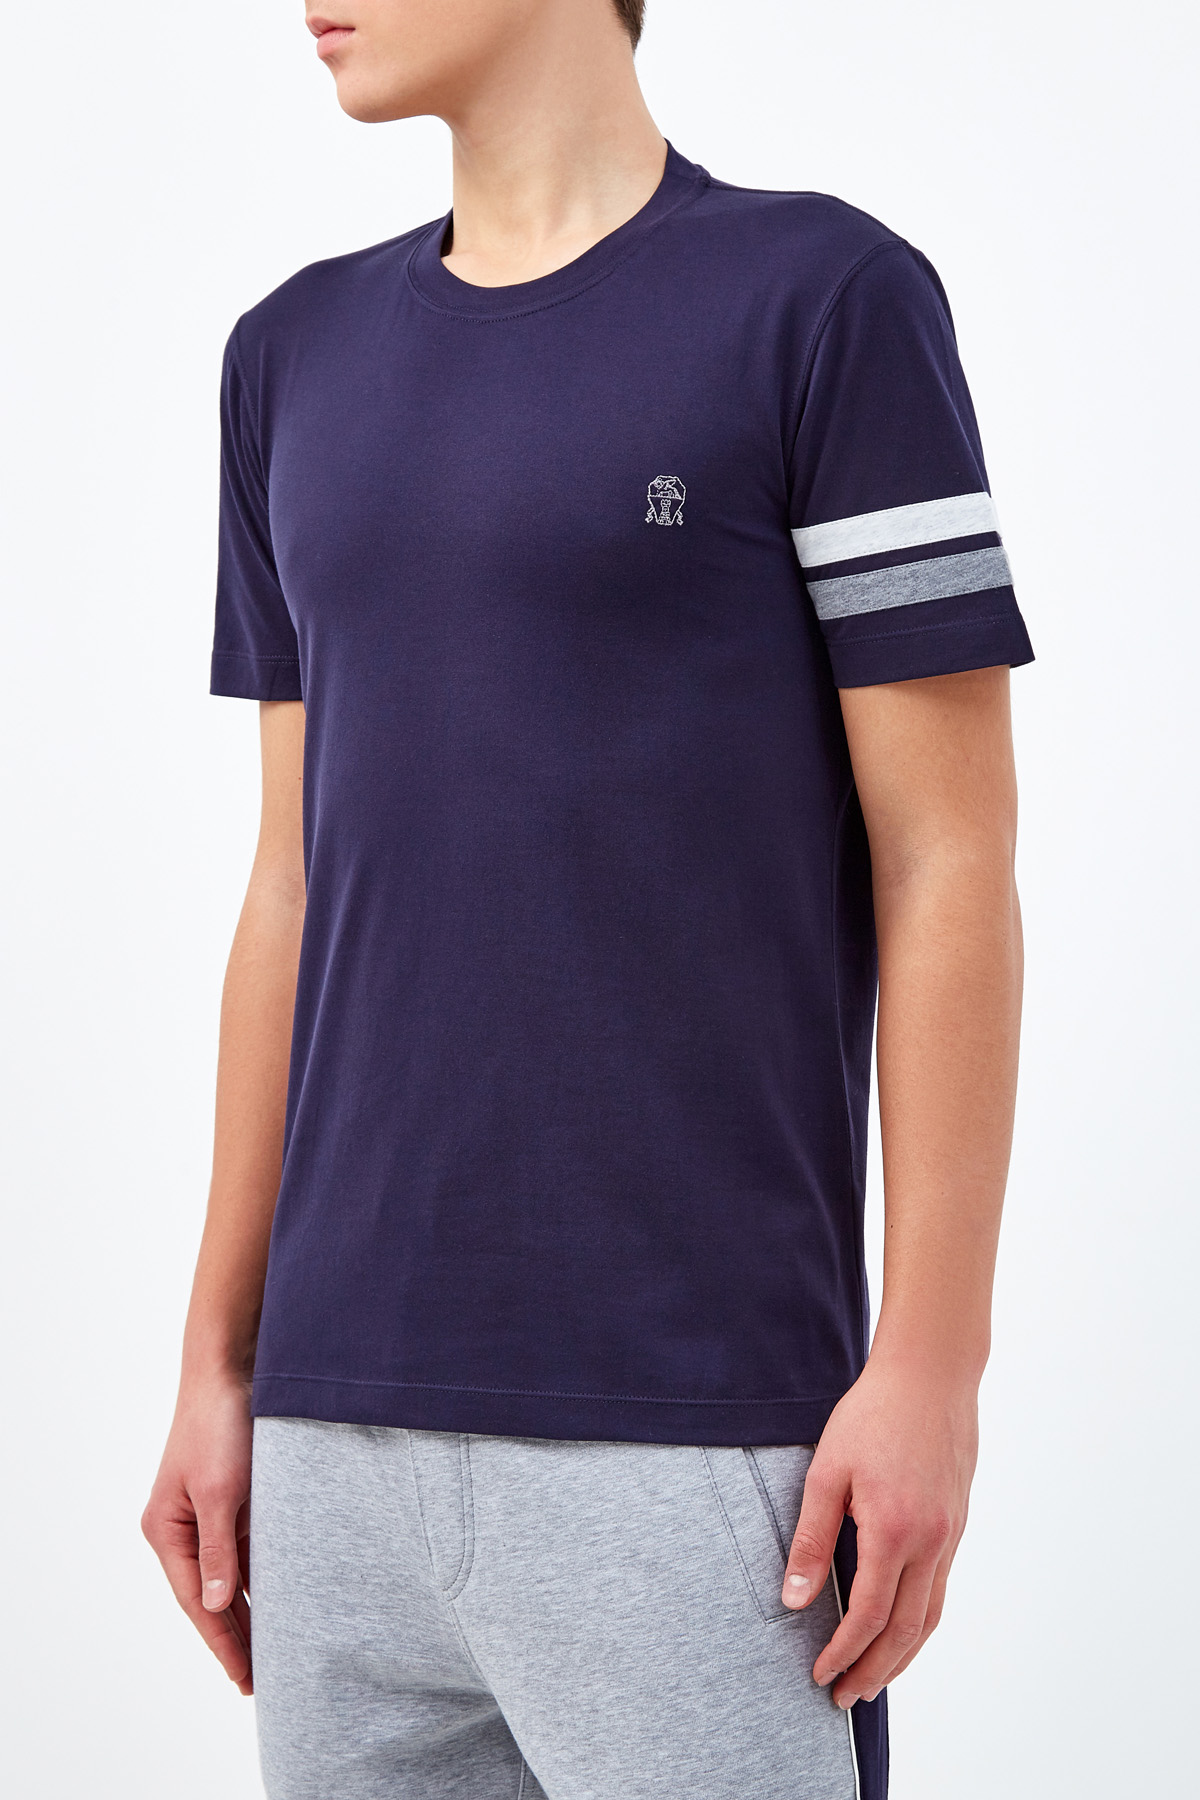 Хлопковая футболка с вышивкой Соломео BRUNELLO CUCINELLI, цвет синий, размер 46 - фото 3